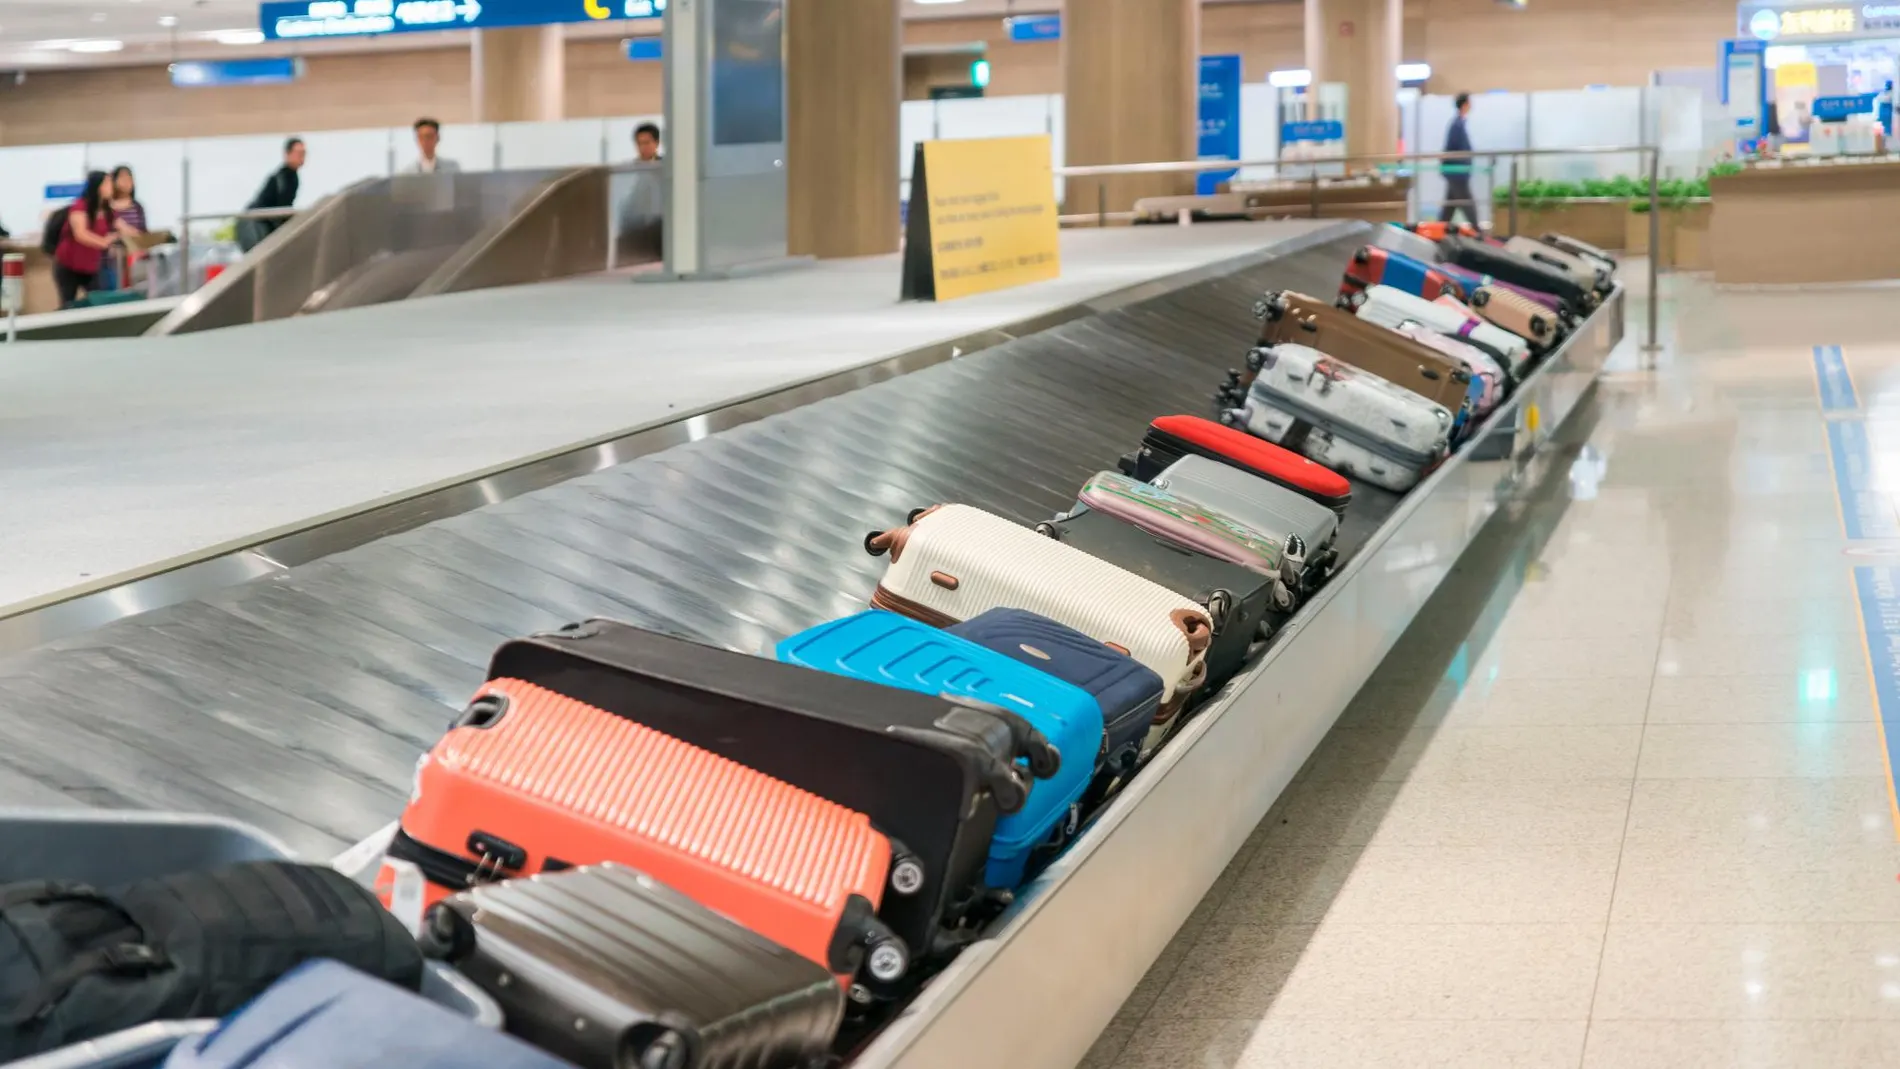 Hacer una maleta perfecta es posible